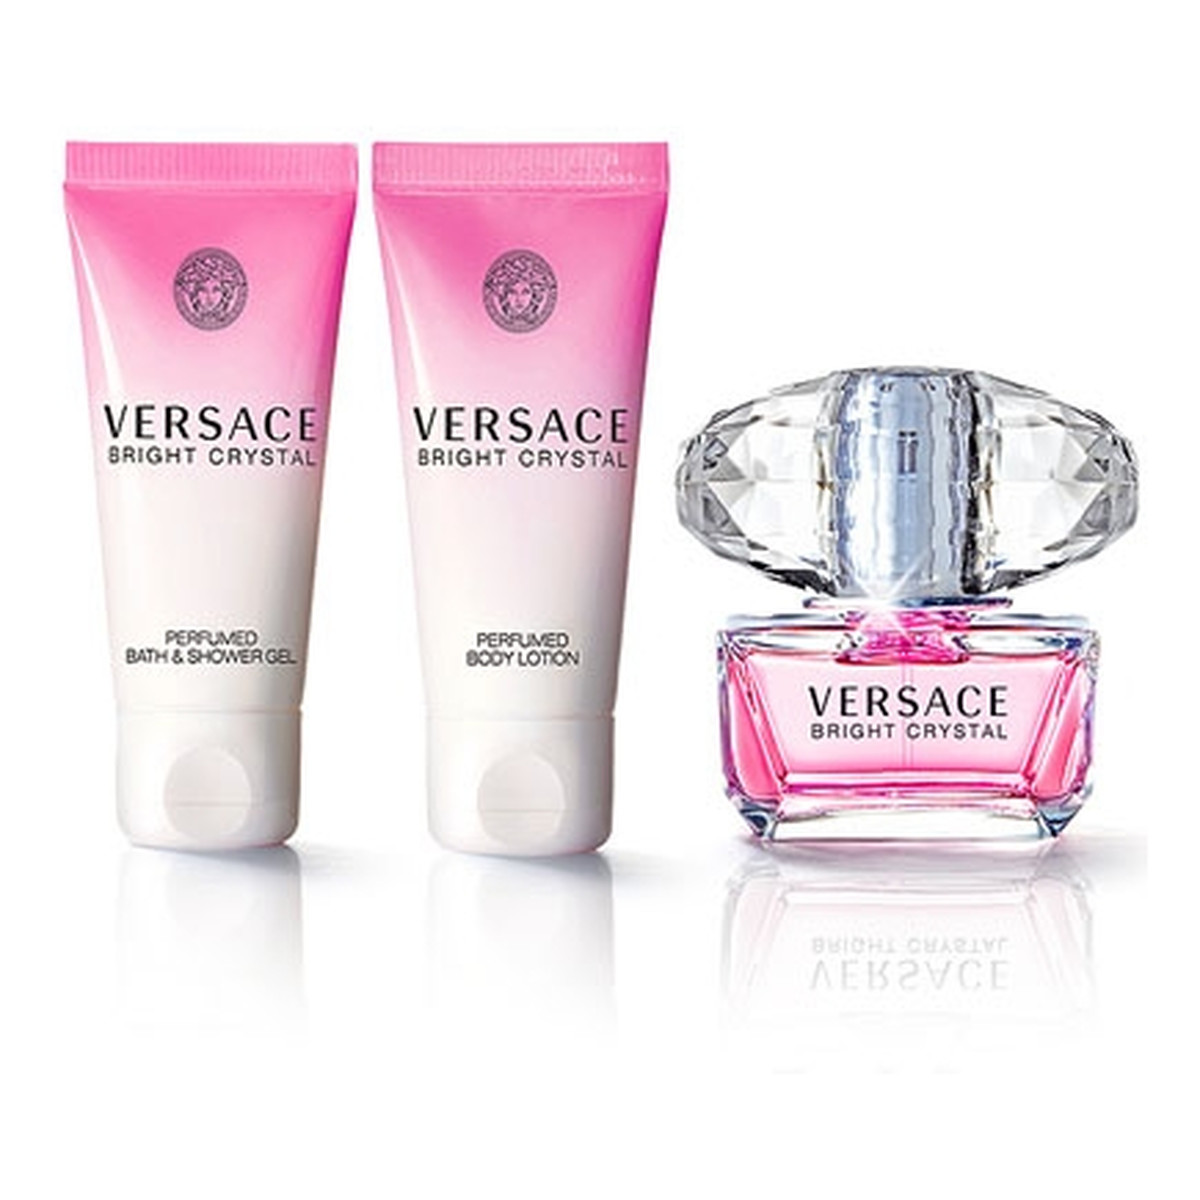 Versace Bright Crystal Zestaw kosmetyków 50ml